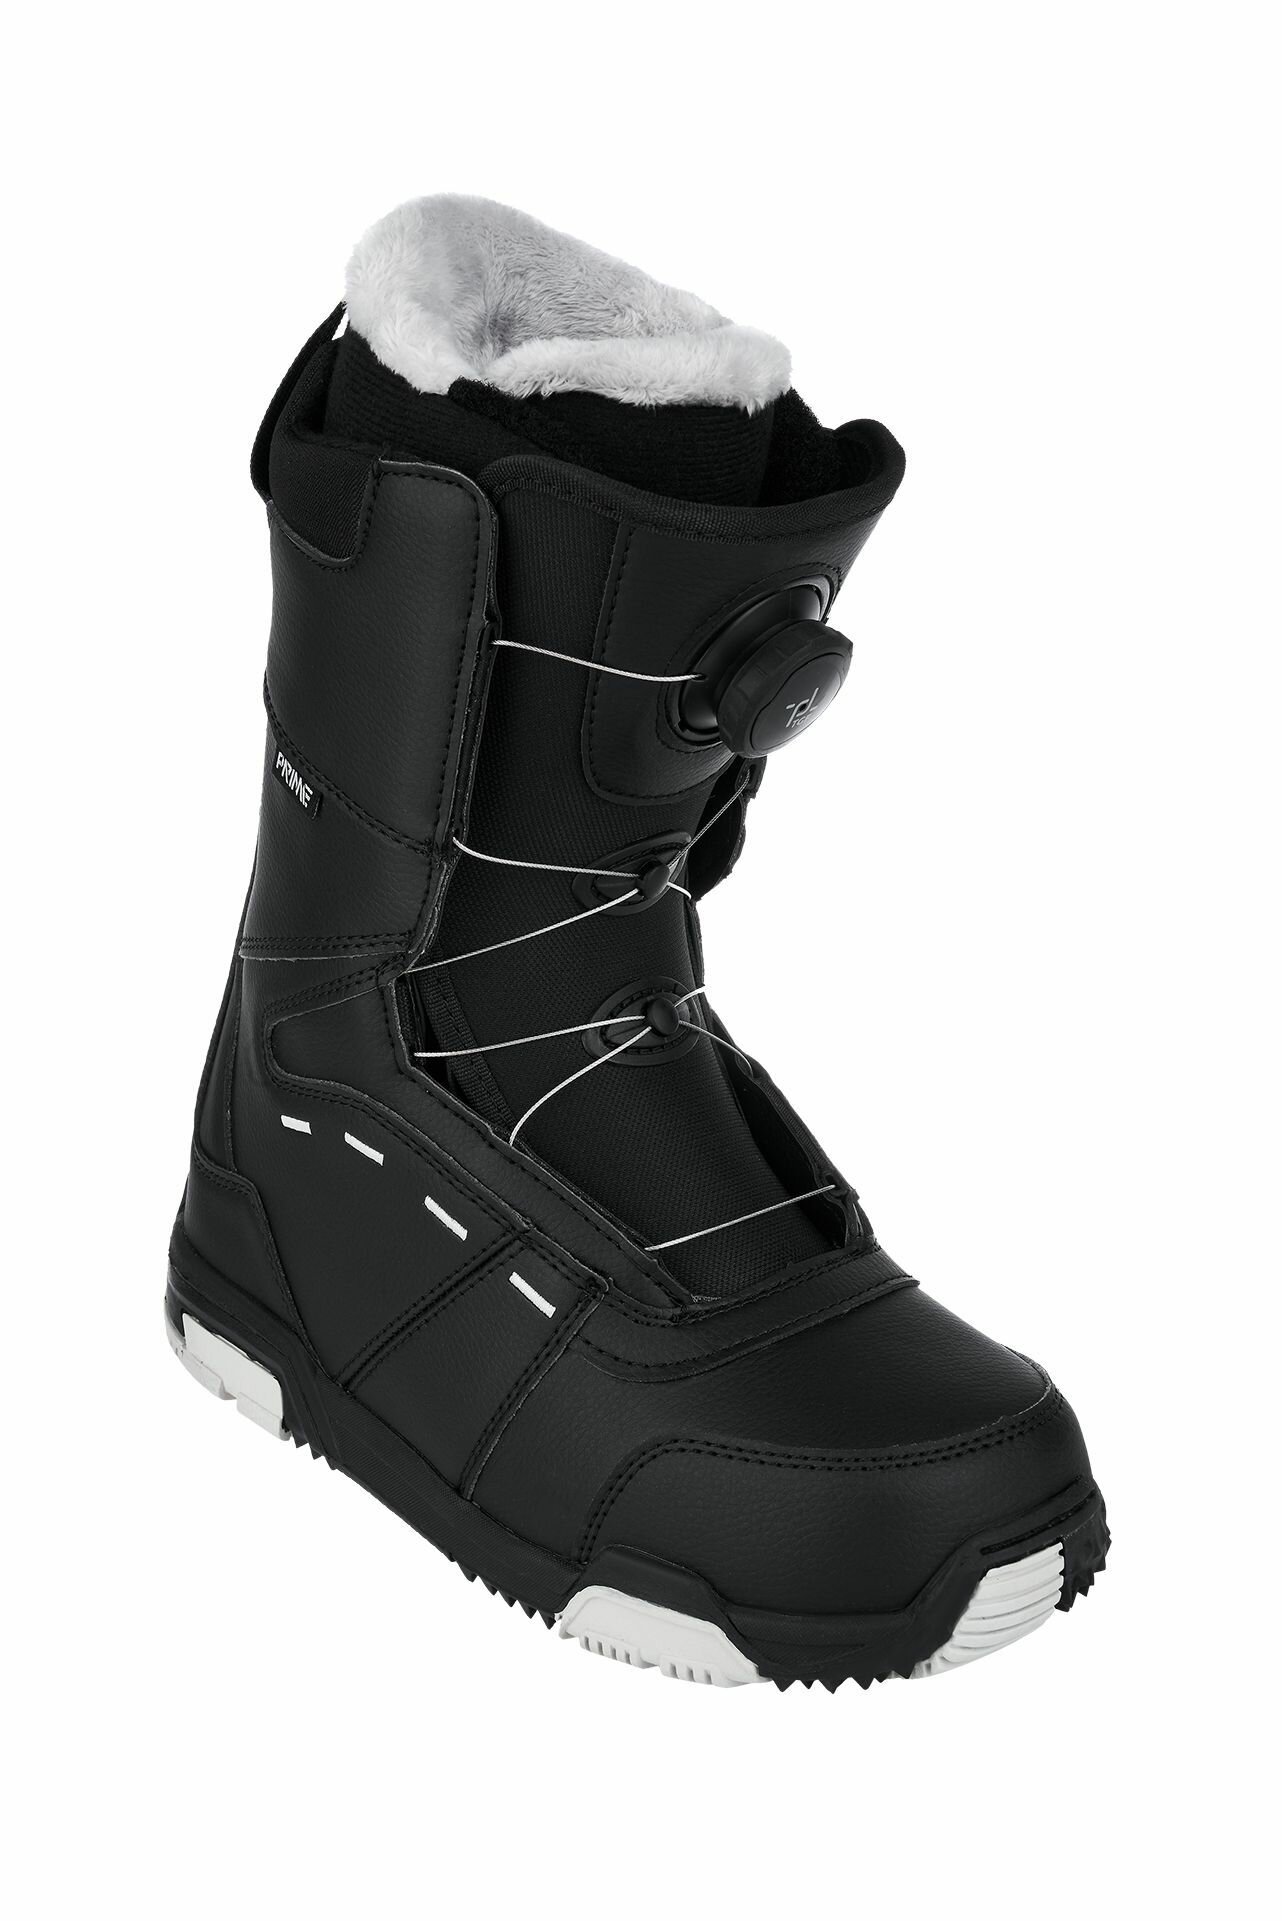 Ботинки сноубордические PRIME COOL-C1 TGF Black (быстрая шнуровка) (43 RU / 29 cm)